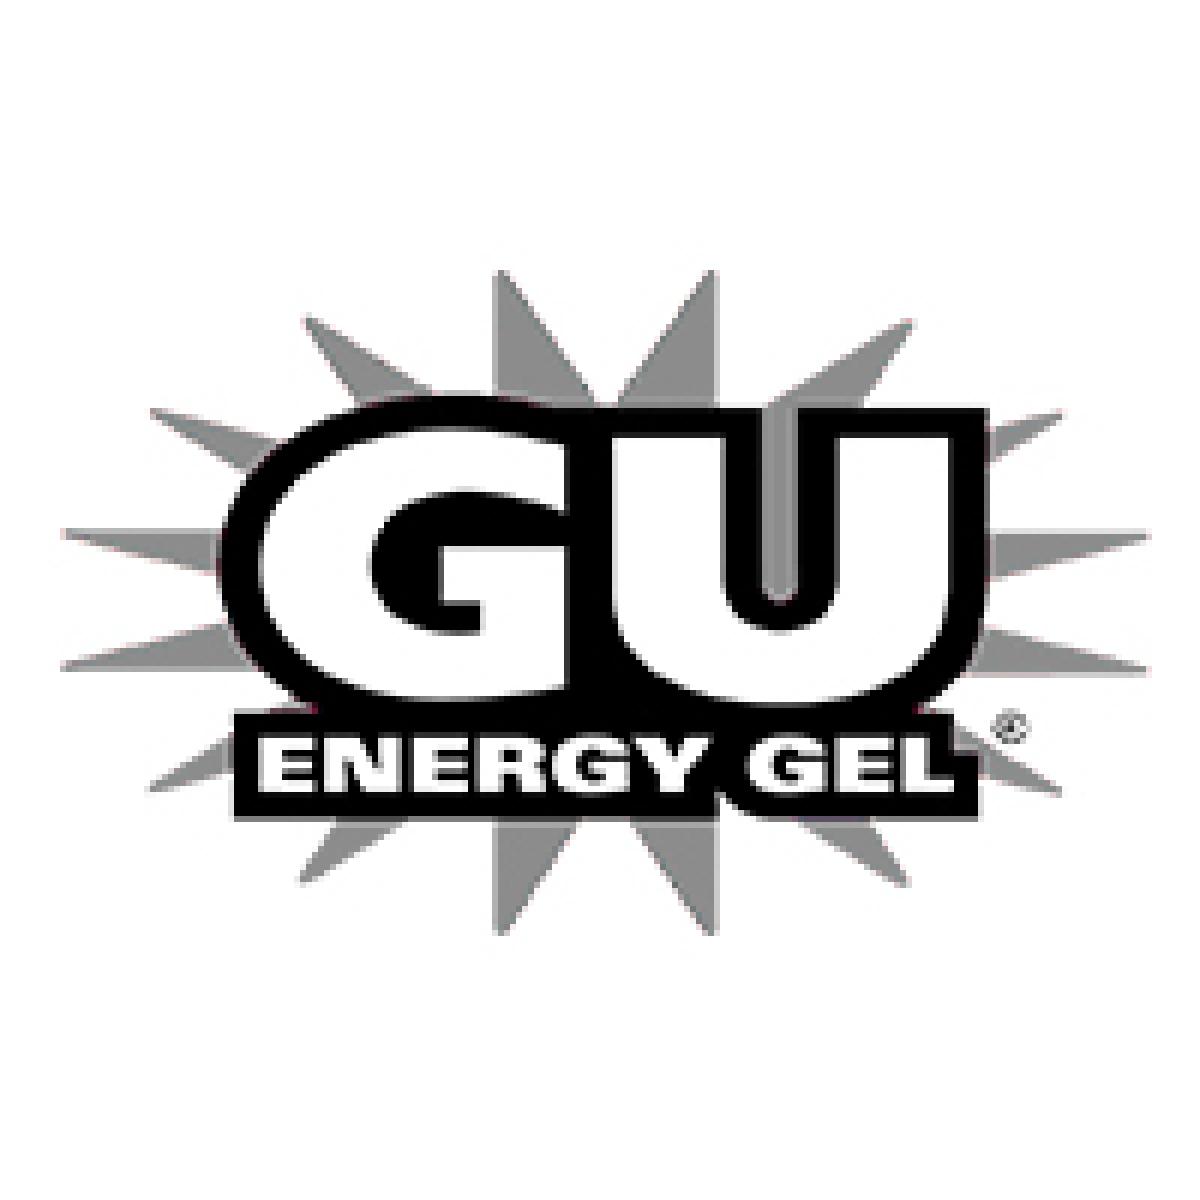 GU Energy Gel